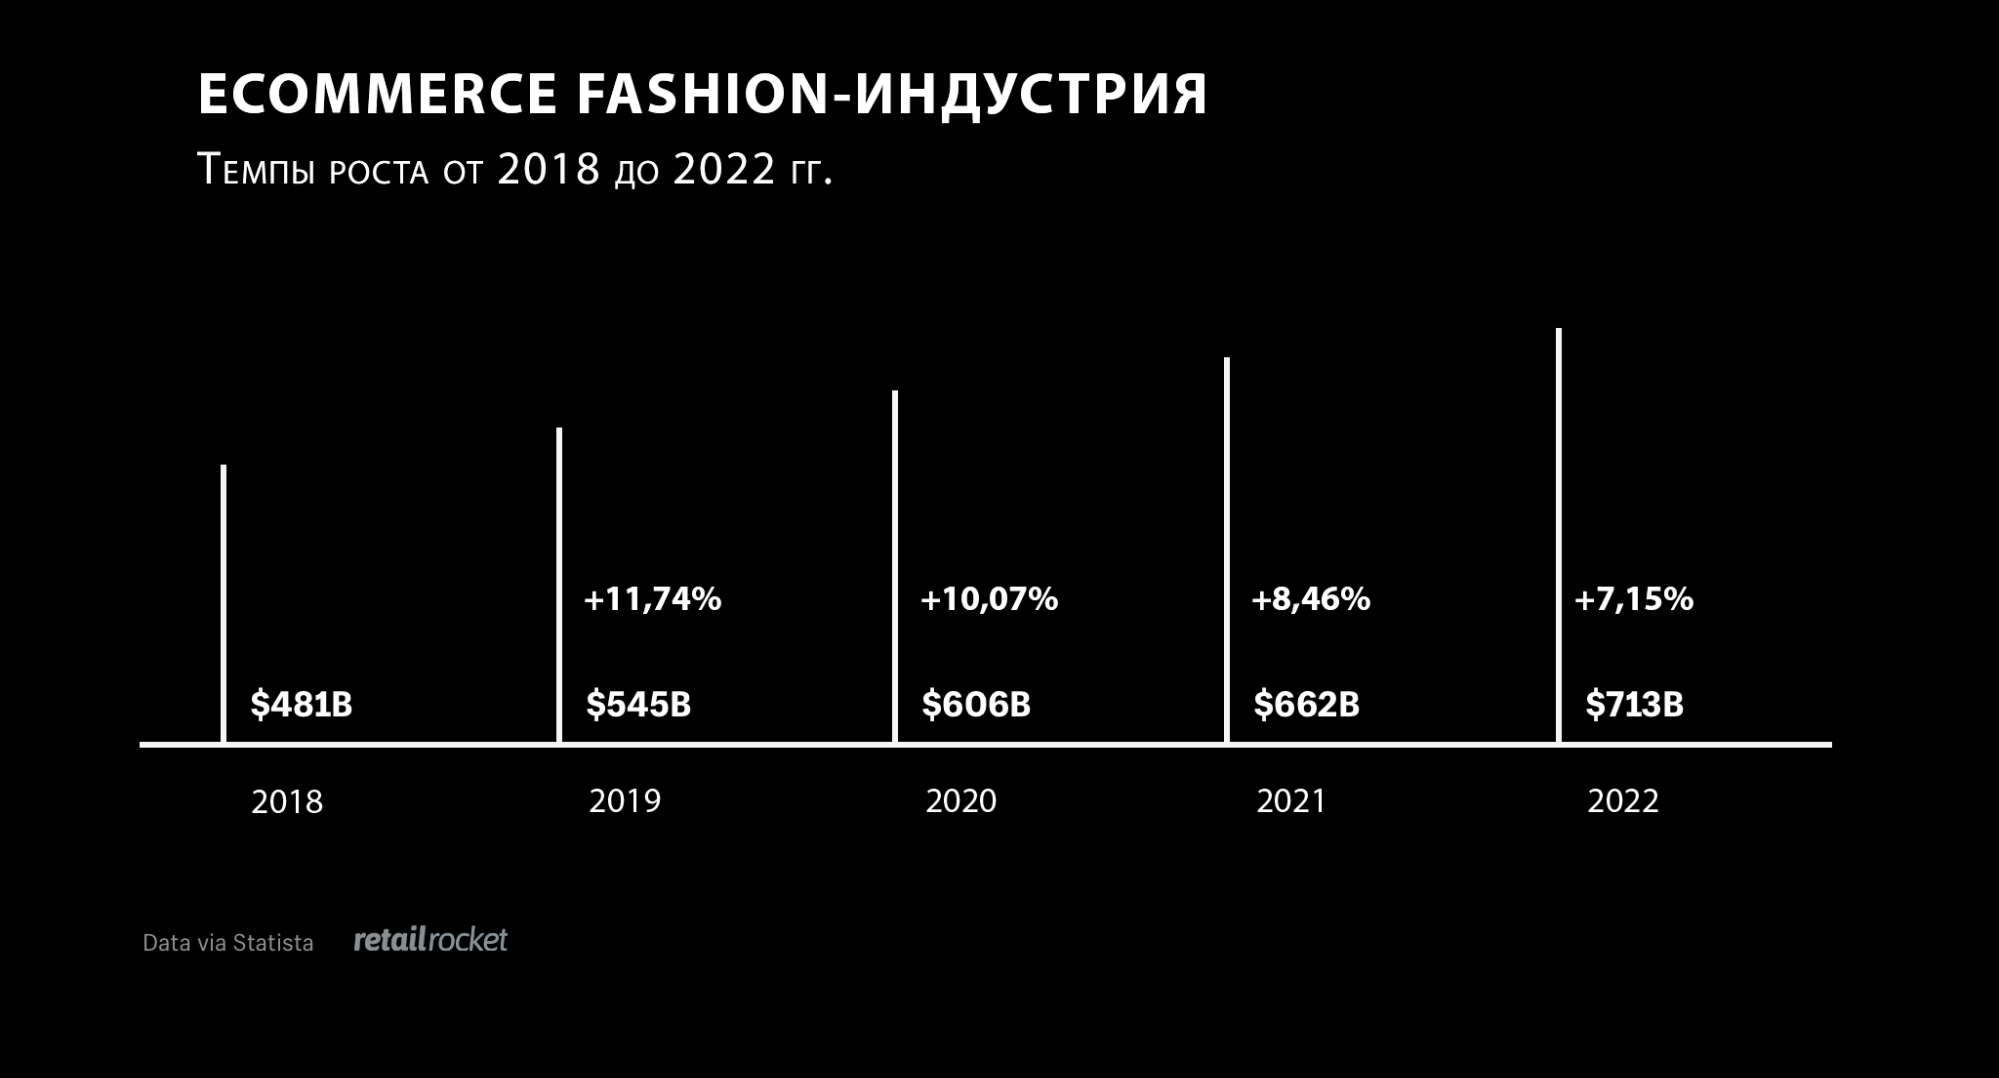 Fashion-ecommerce: статистика, тенденции и 7 реальных стратегий ритейлеров